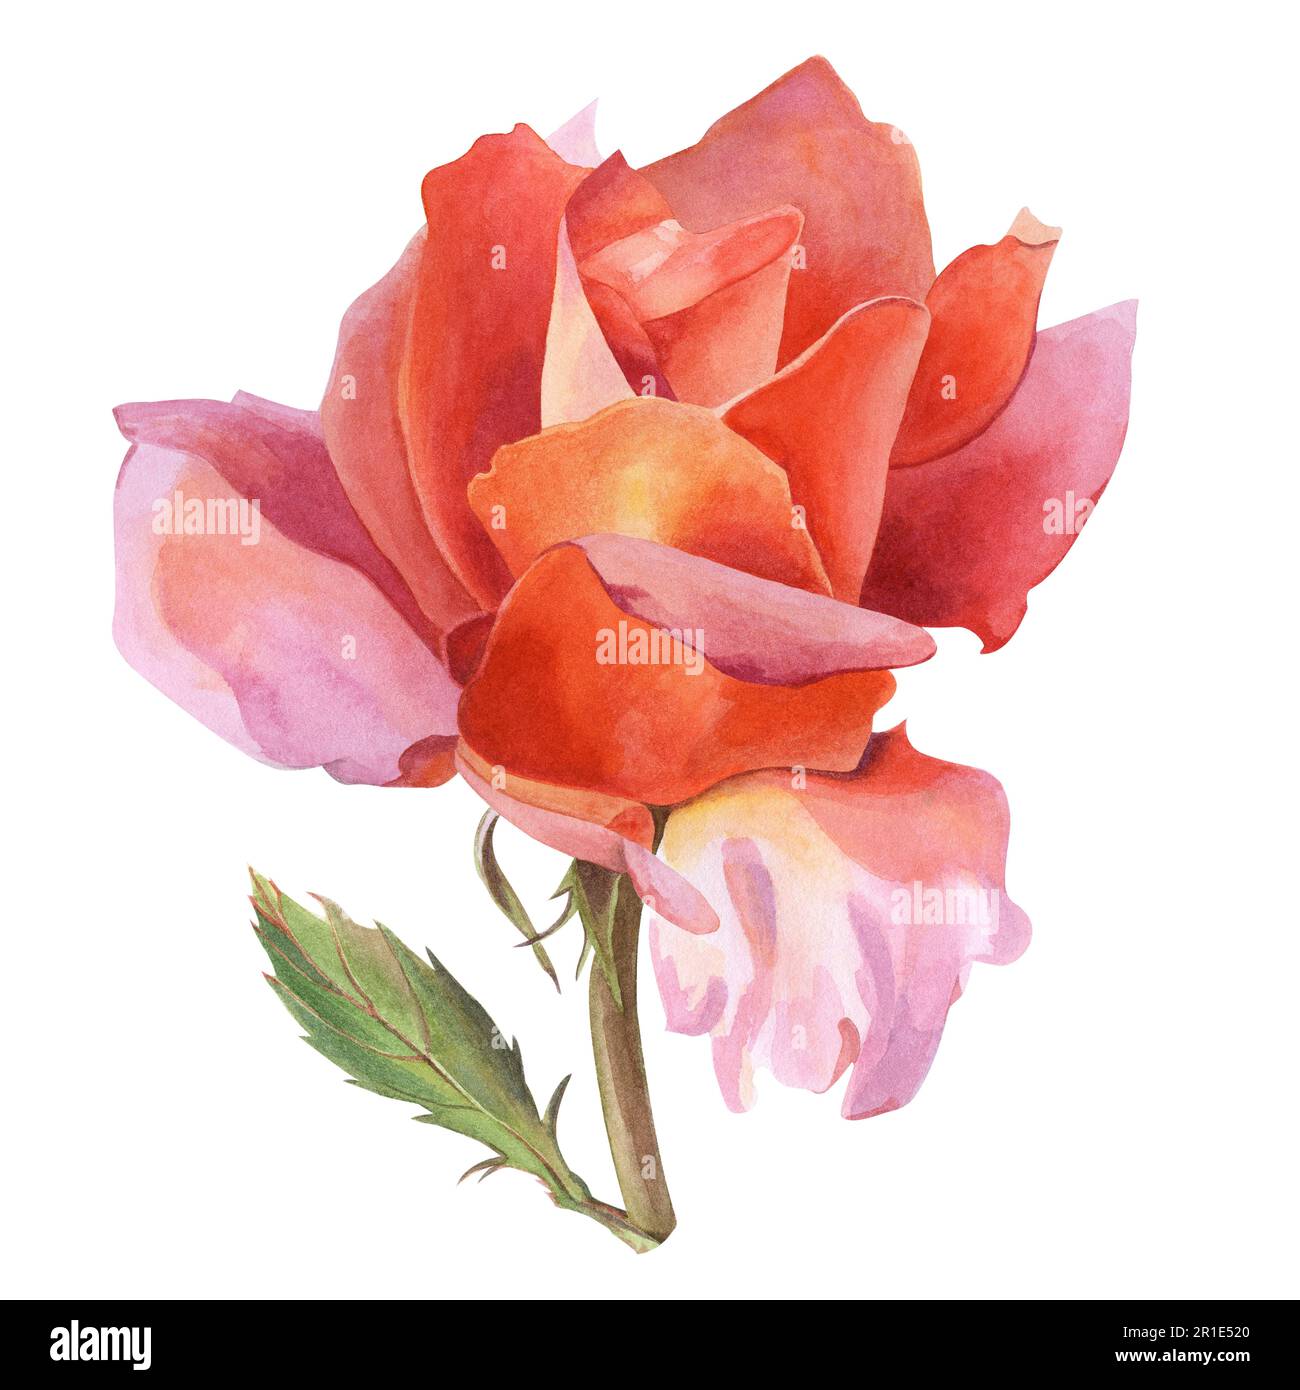 Un fiore di rosa con petali arancio-rosa su un ramoscello con una foglia. Illustrazione acquerello, disegnata a mano. Per la progettazione di inviti di nozze, cartoline, etс Foto Stock